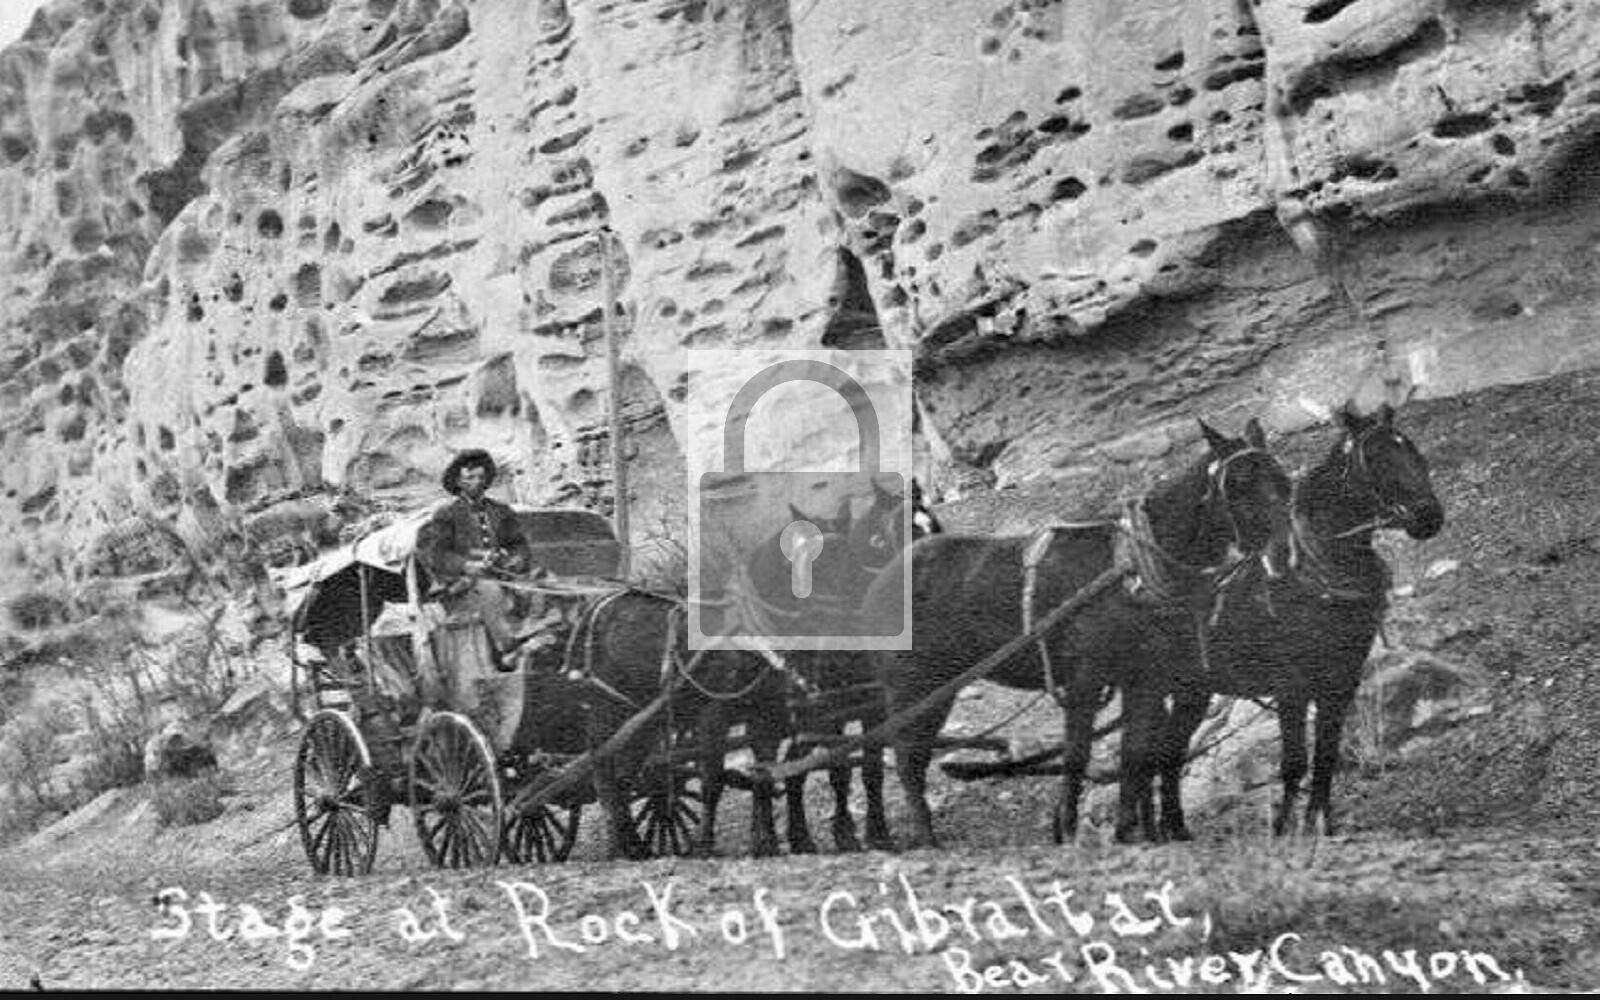 Stagecoach Rock Of Gibraltar Bear Canyon Colorado CO Reprint Postcard